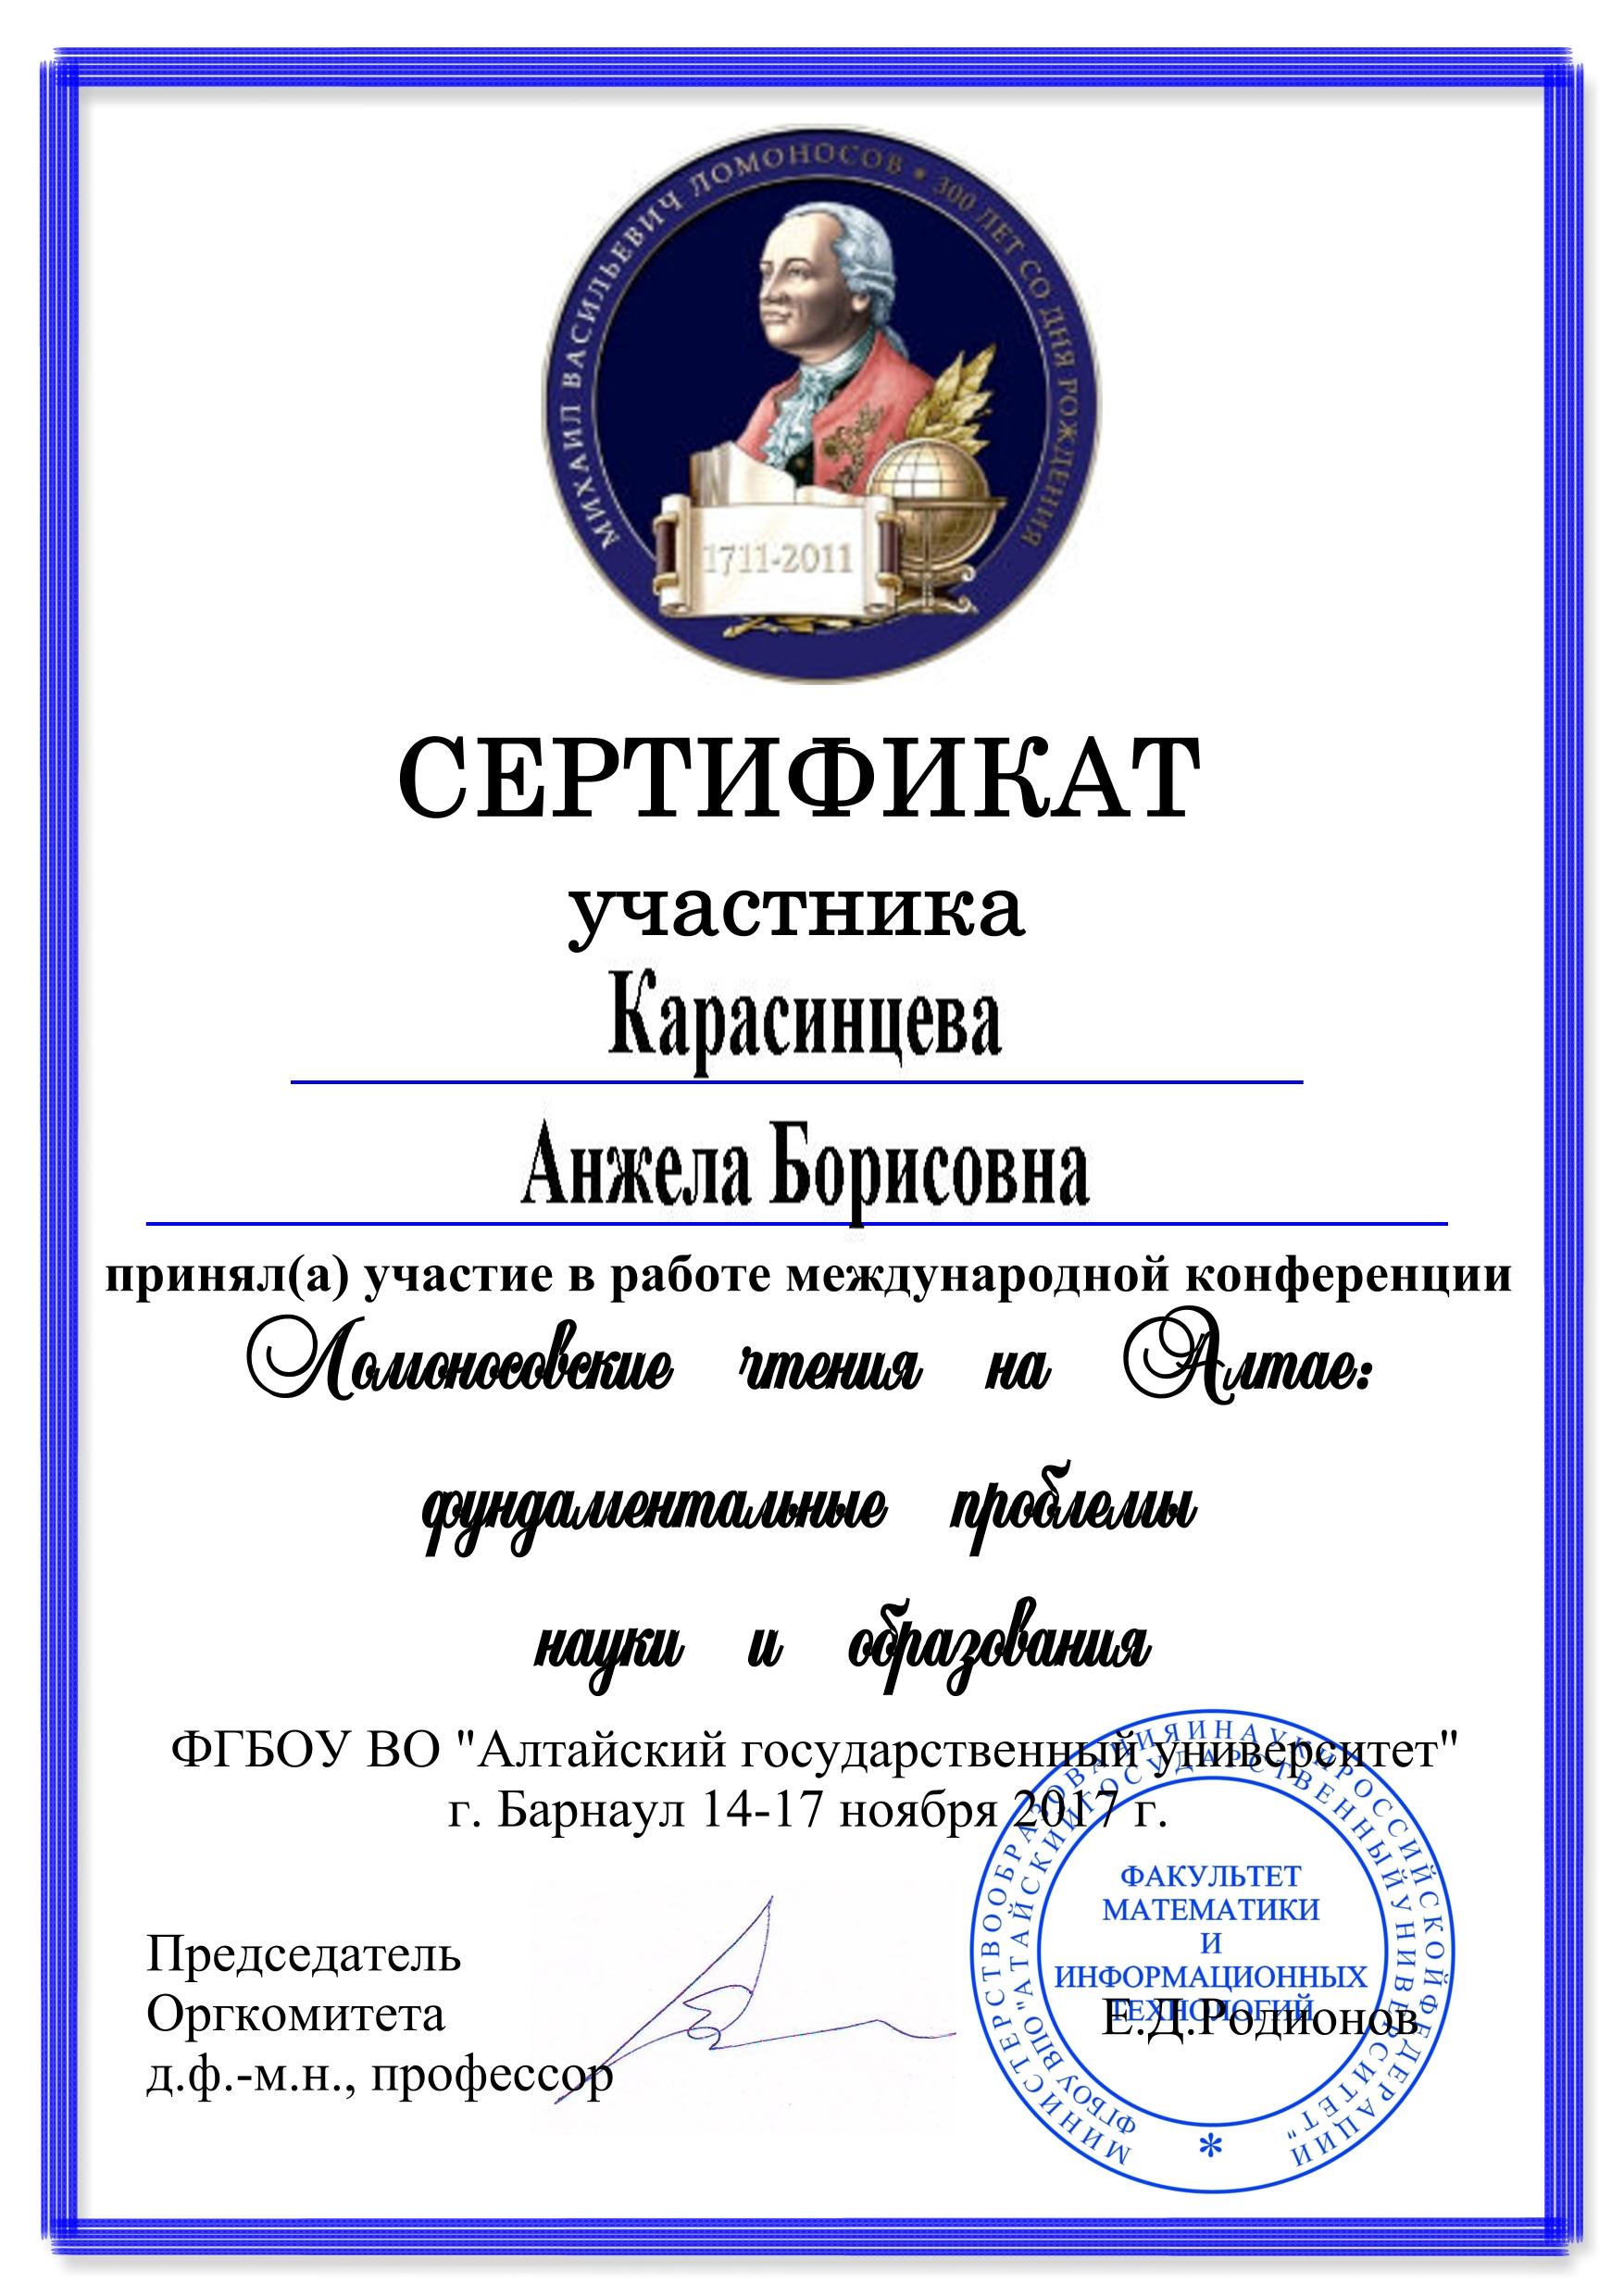 Сертификат за участие в конференции "Ломоносовские чтения на Алтае" 2017